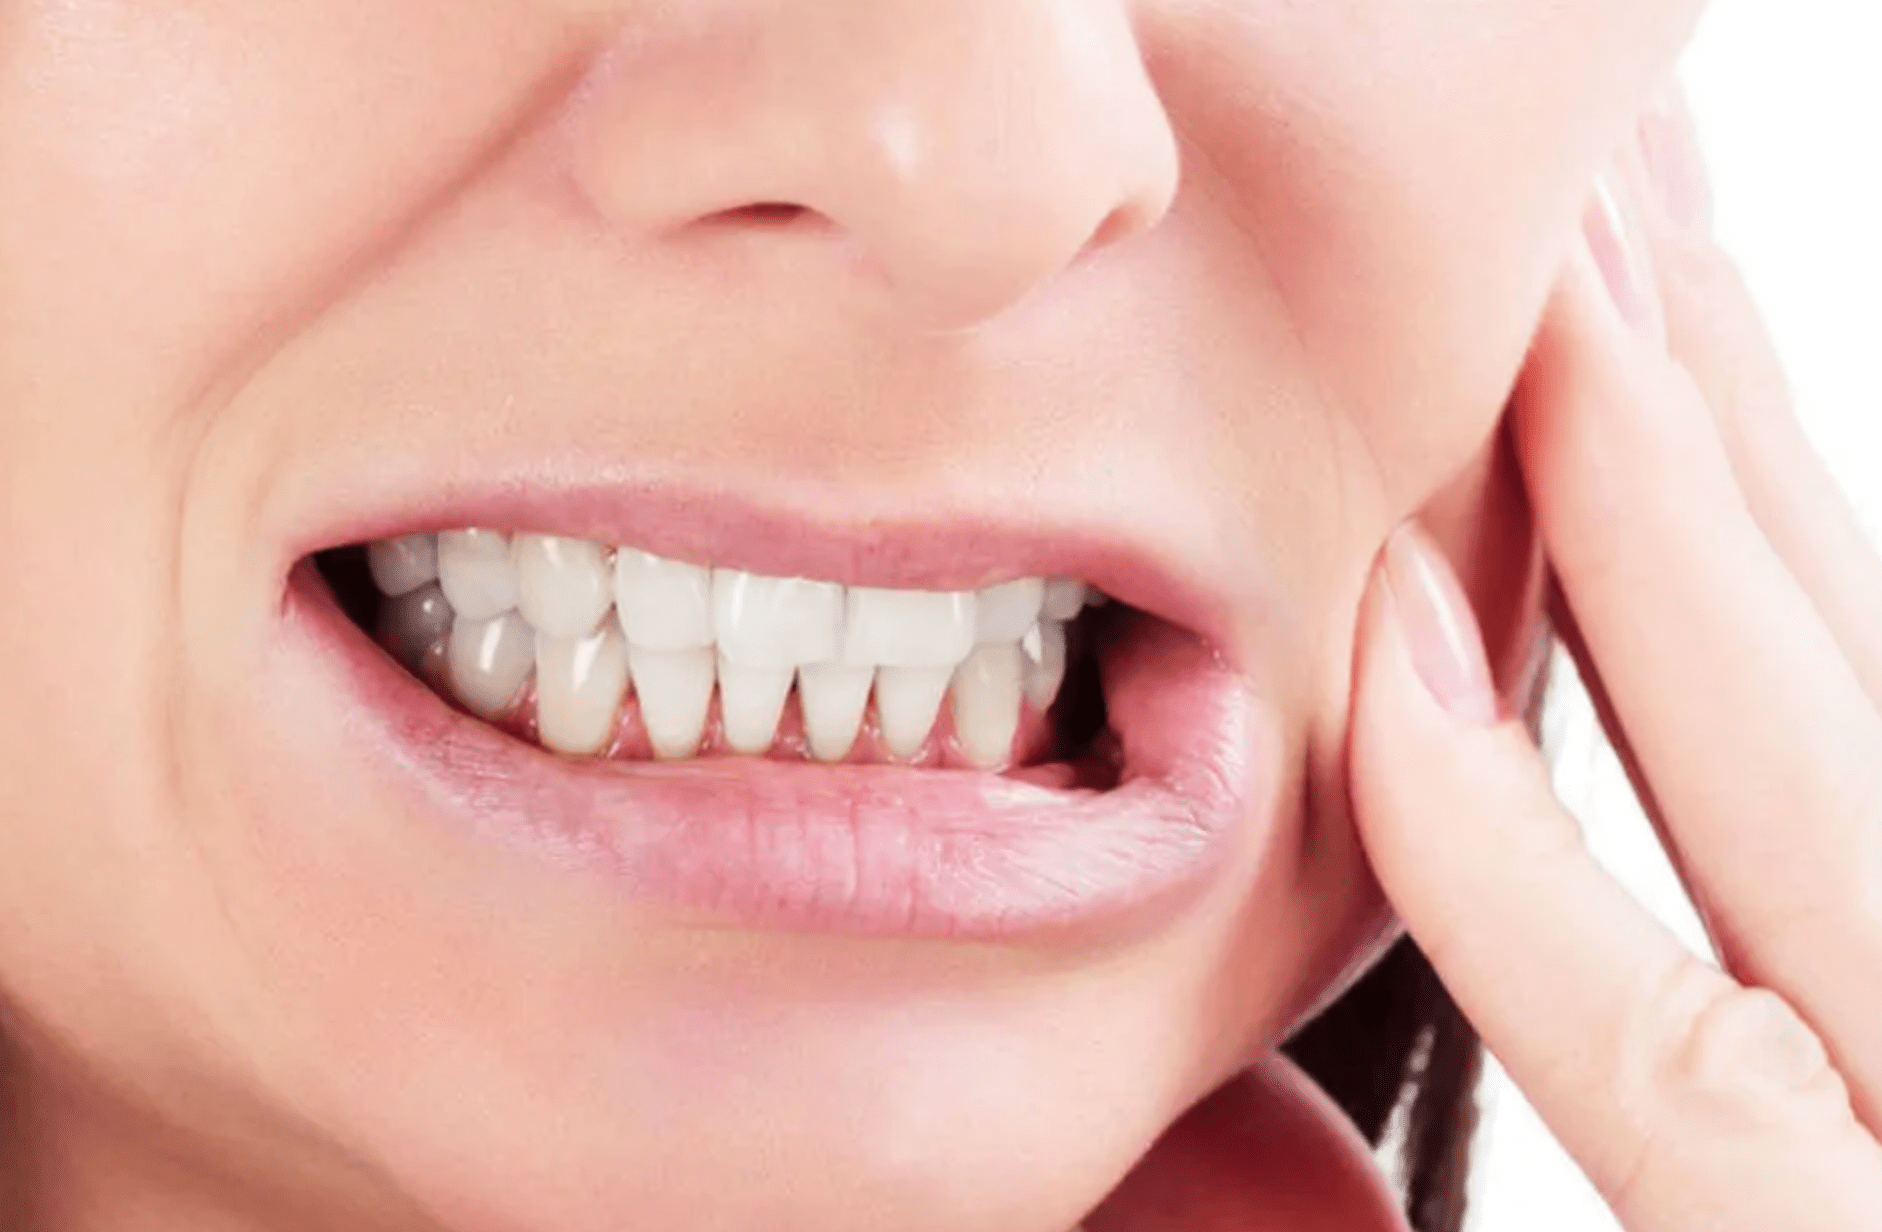 Teeth Grinding Bruxism